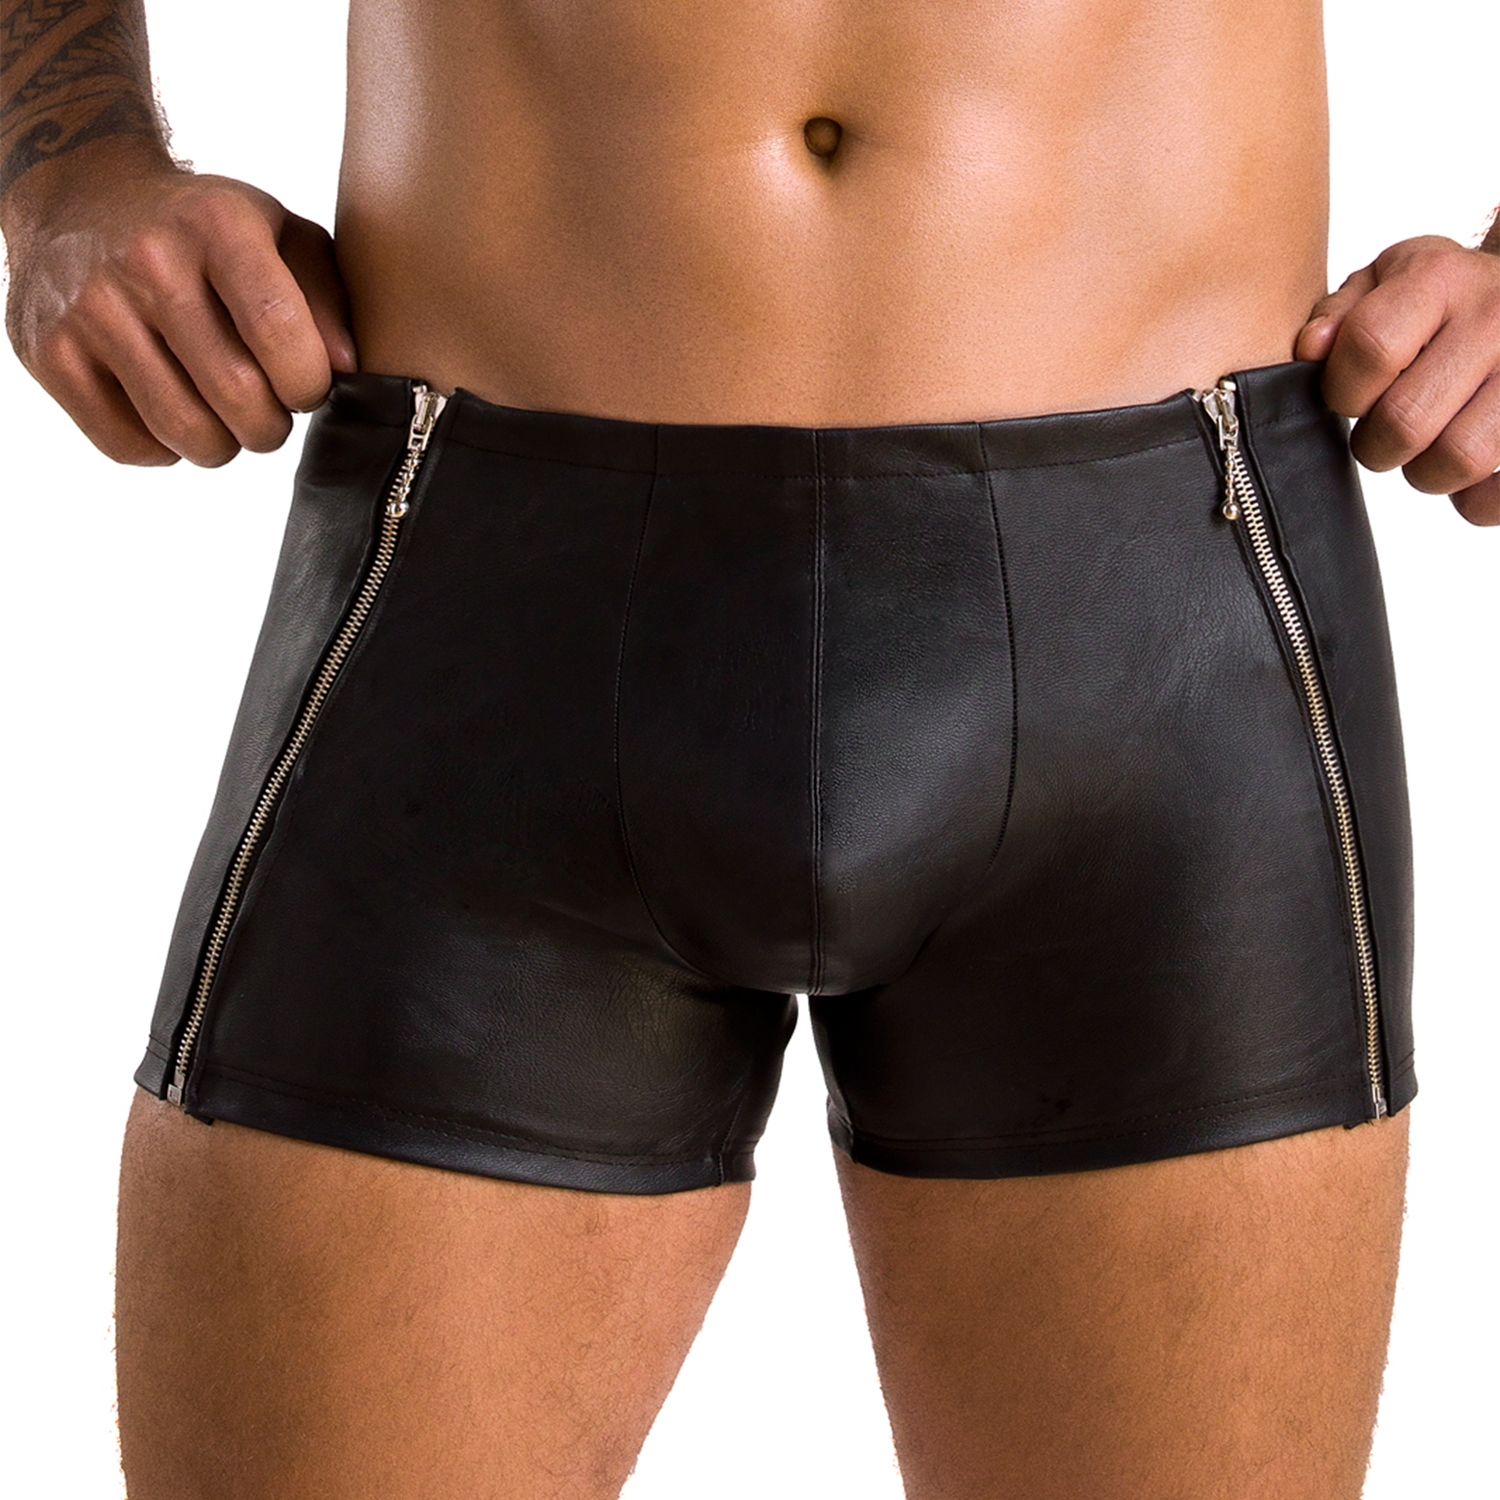 Passion Matt Svarta Shorts - Svart - 2XL/3XL | Män//Fetish//Fetishkläder//Till män//Underkläder För Män//Fetish Underkläder//Läderkläder//Passion//Boxer Shorts | Intimast